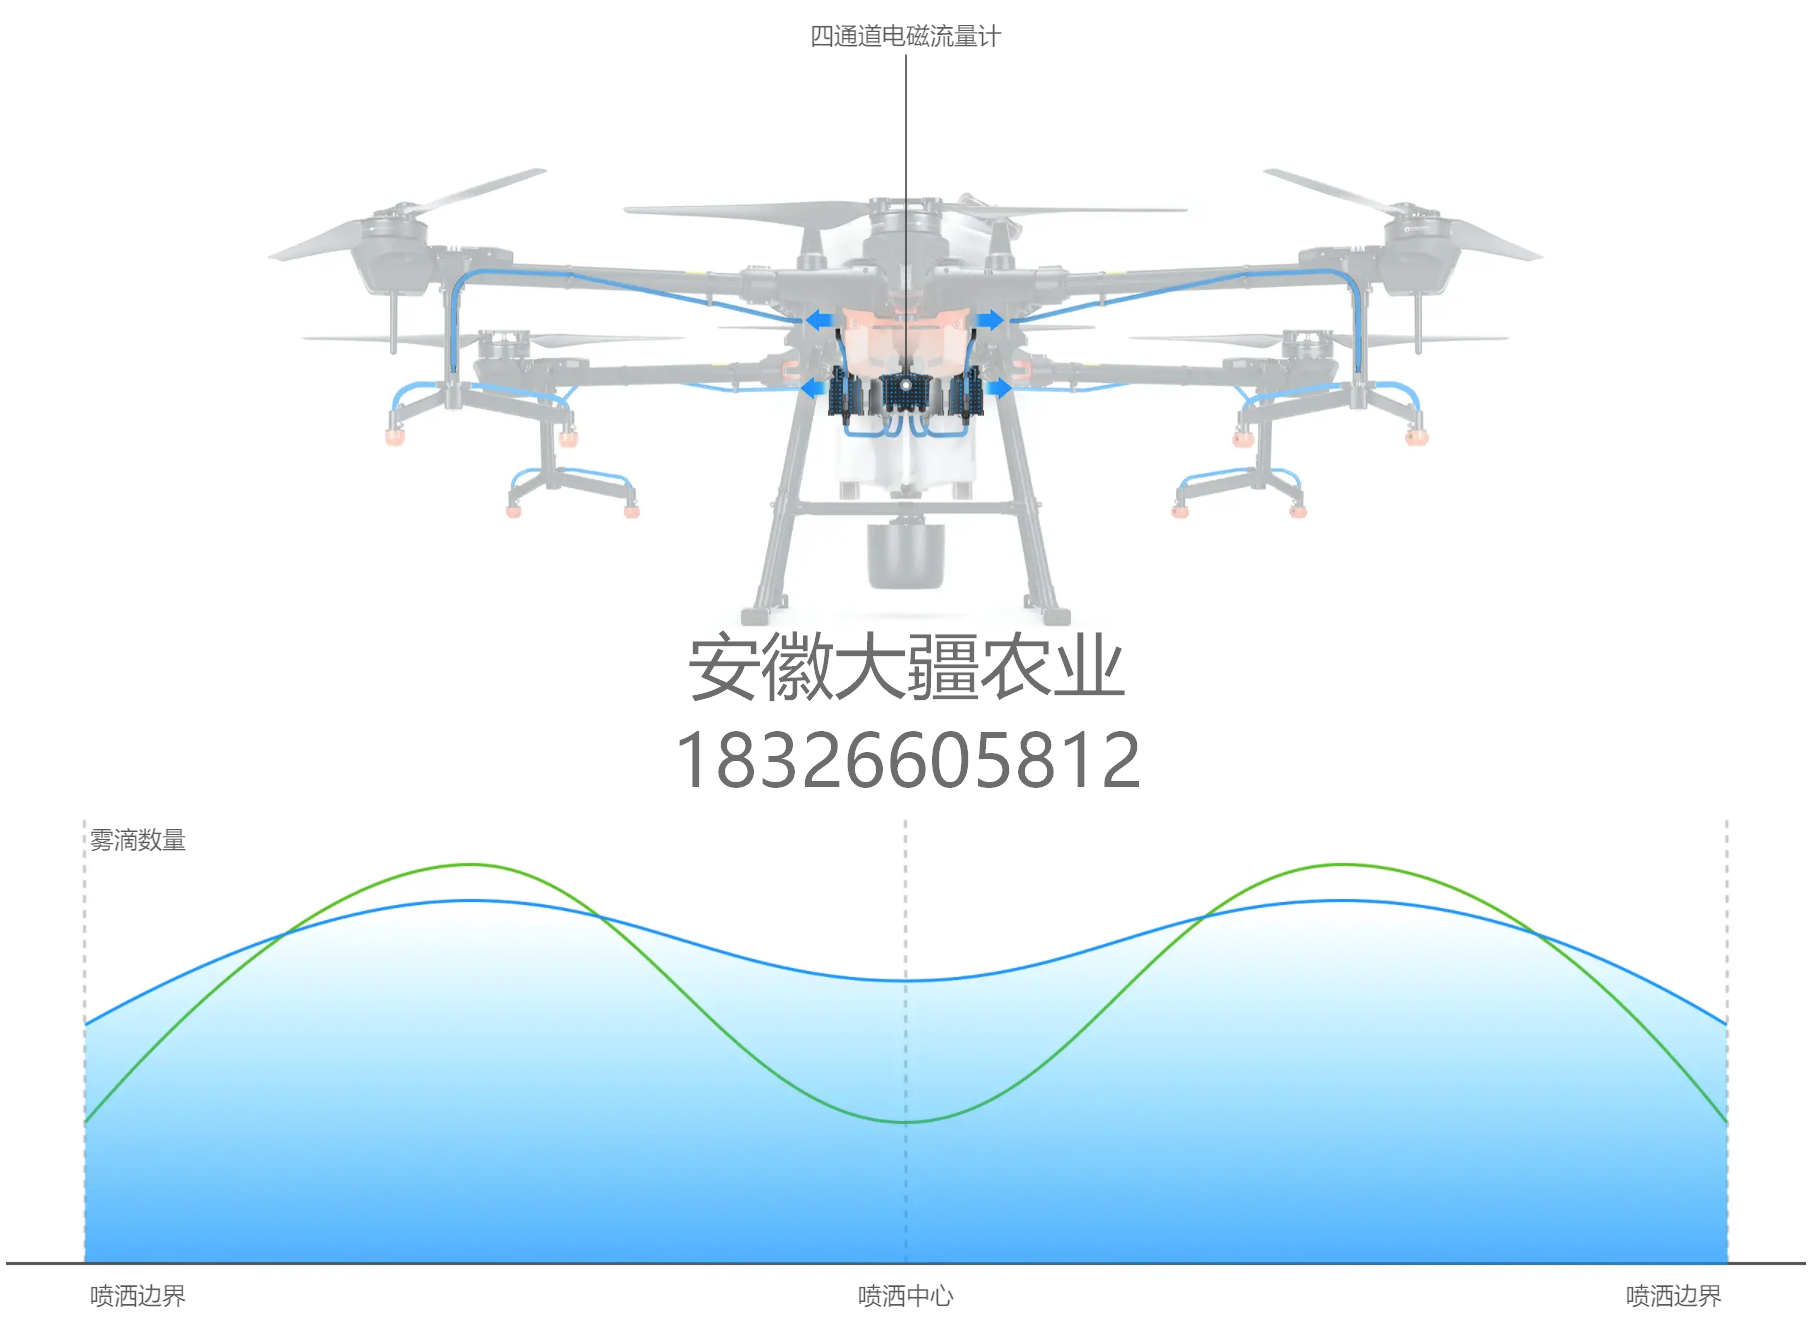 大疆农业发布T10植保无人机，全能套的价格也仅为34999元 | 我爱无人机网